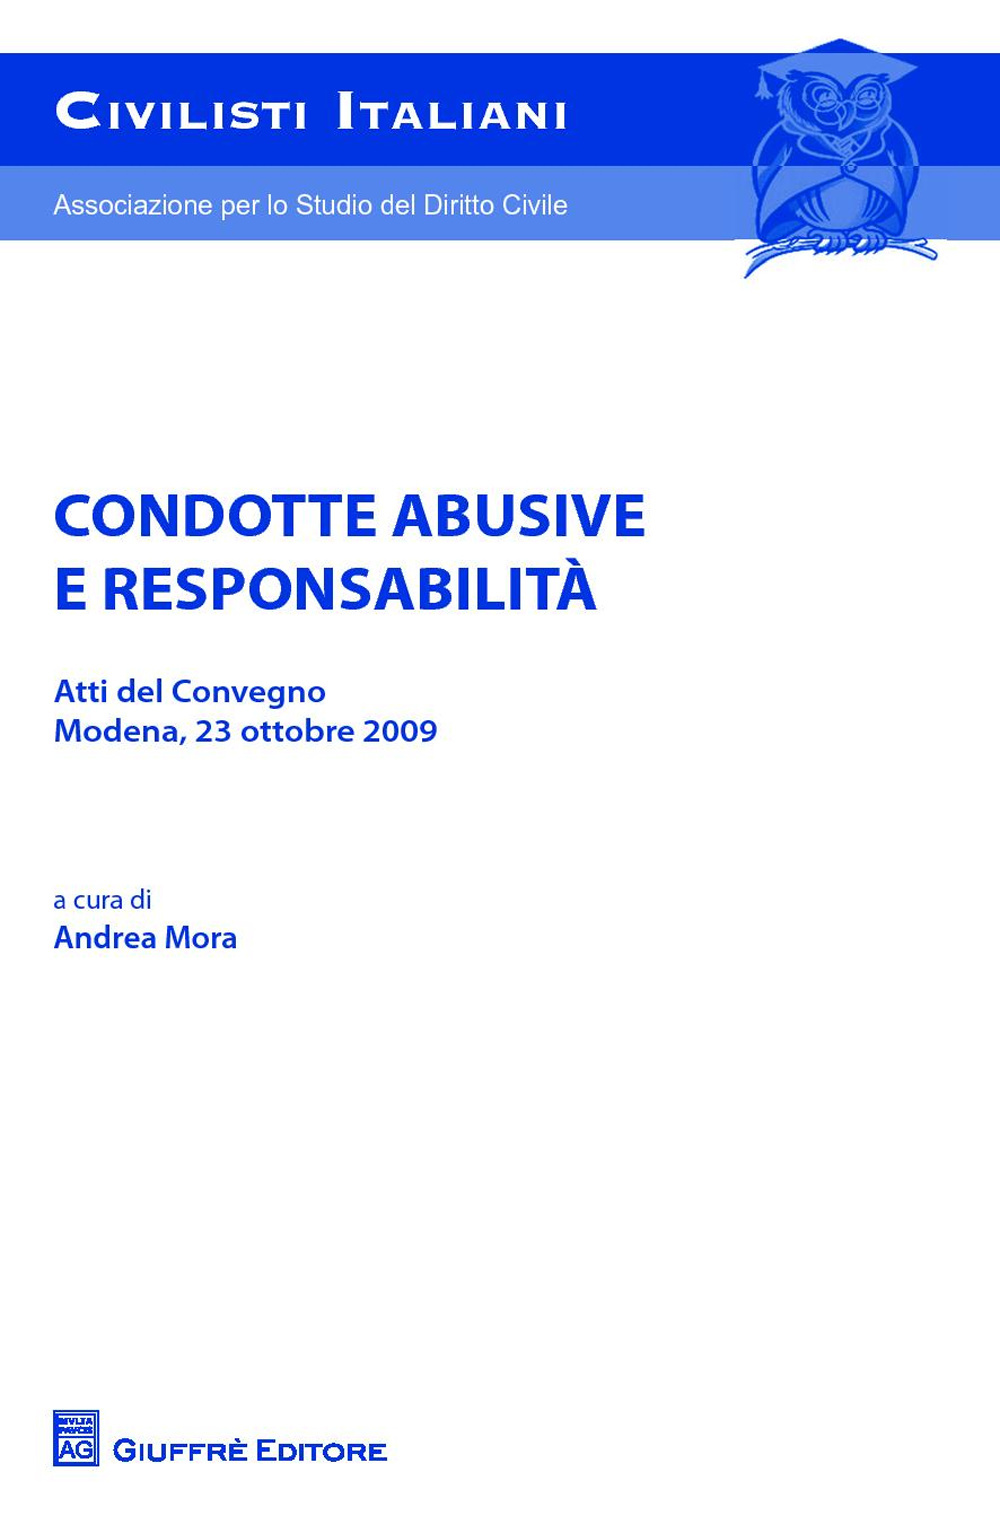 Condotte abusive e responsabilità. Atti del Convegno (Modena, 23 ottobre 2009)